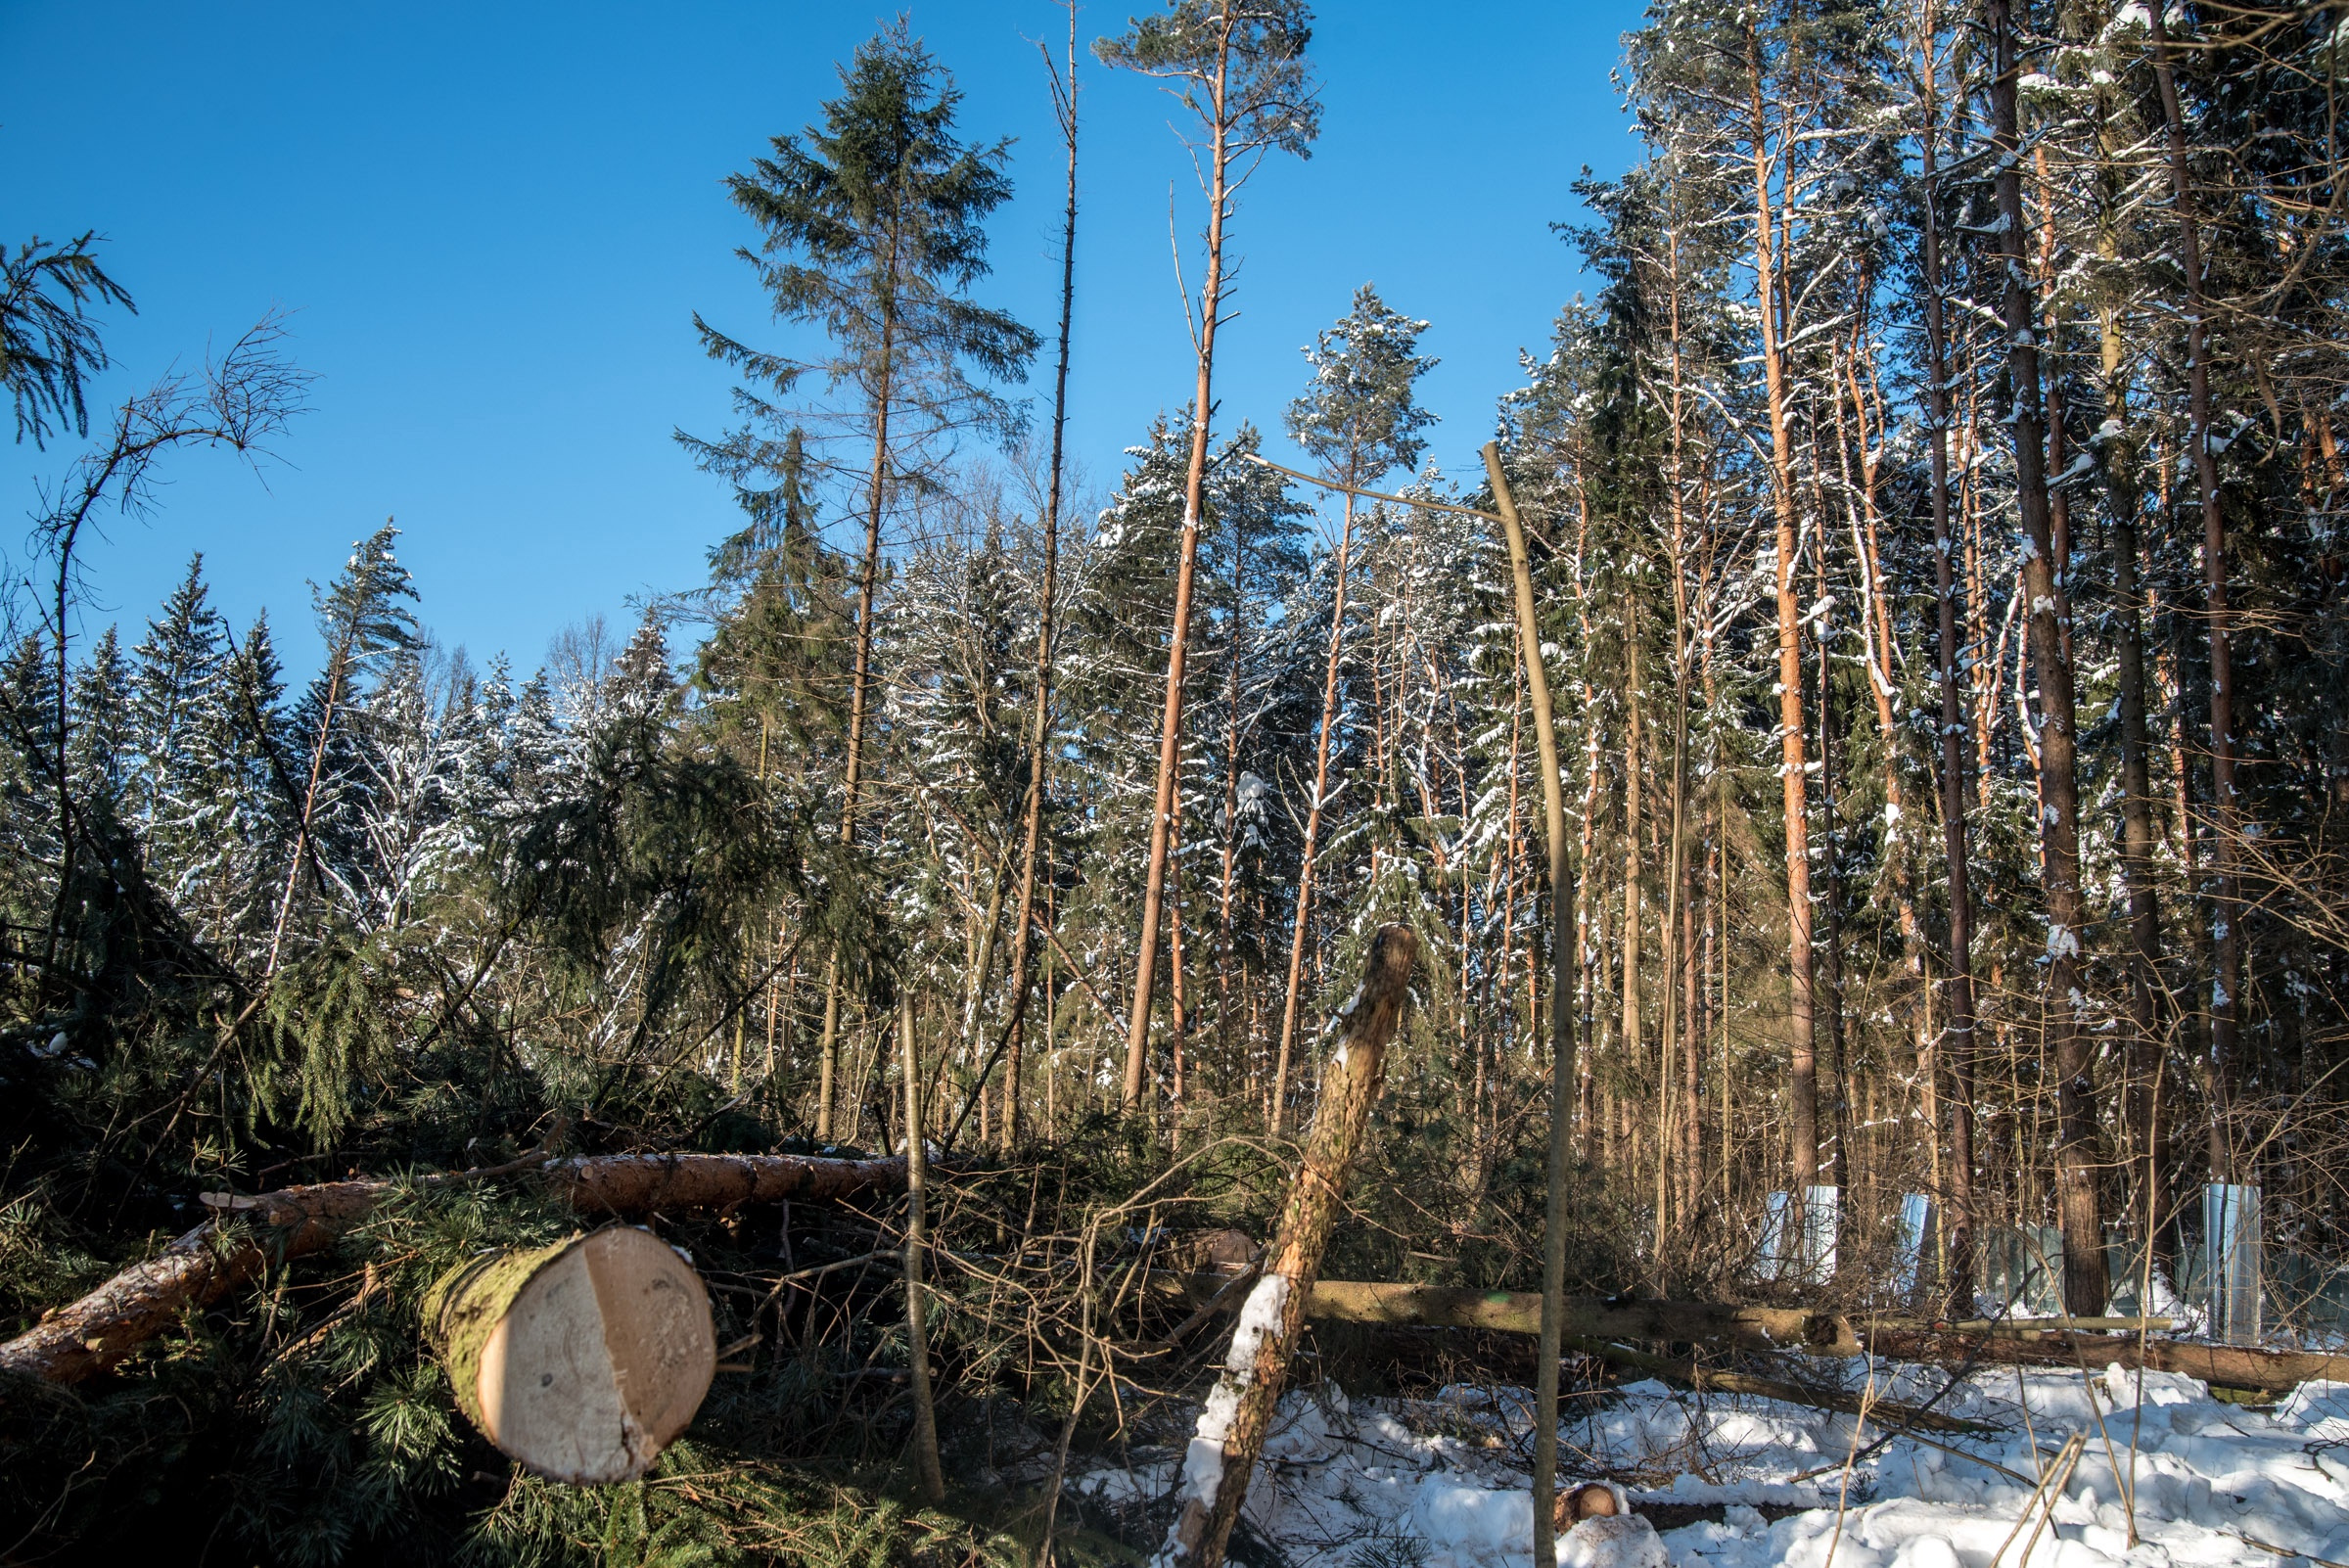 Рабочие валят лес, несмотря на просроченный срок договора пользования земельным участком, который истек 20 января